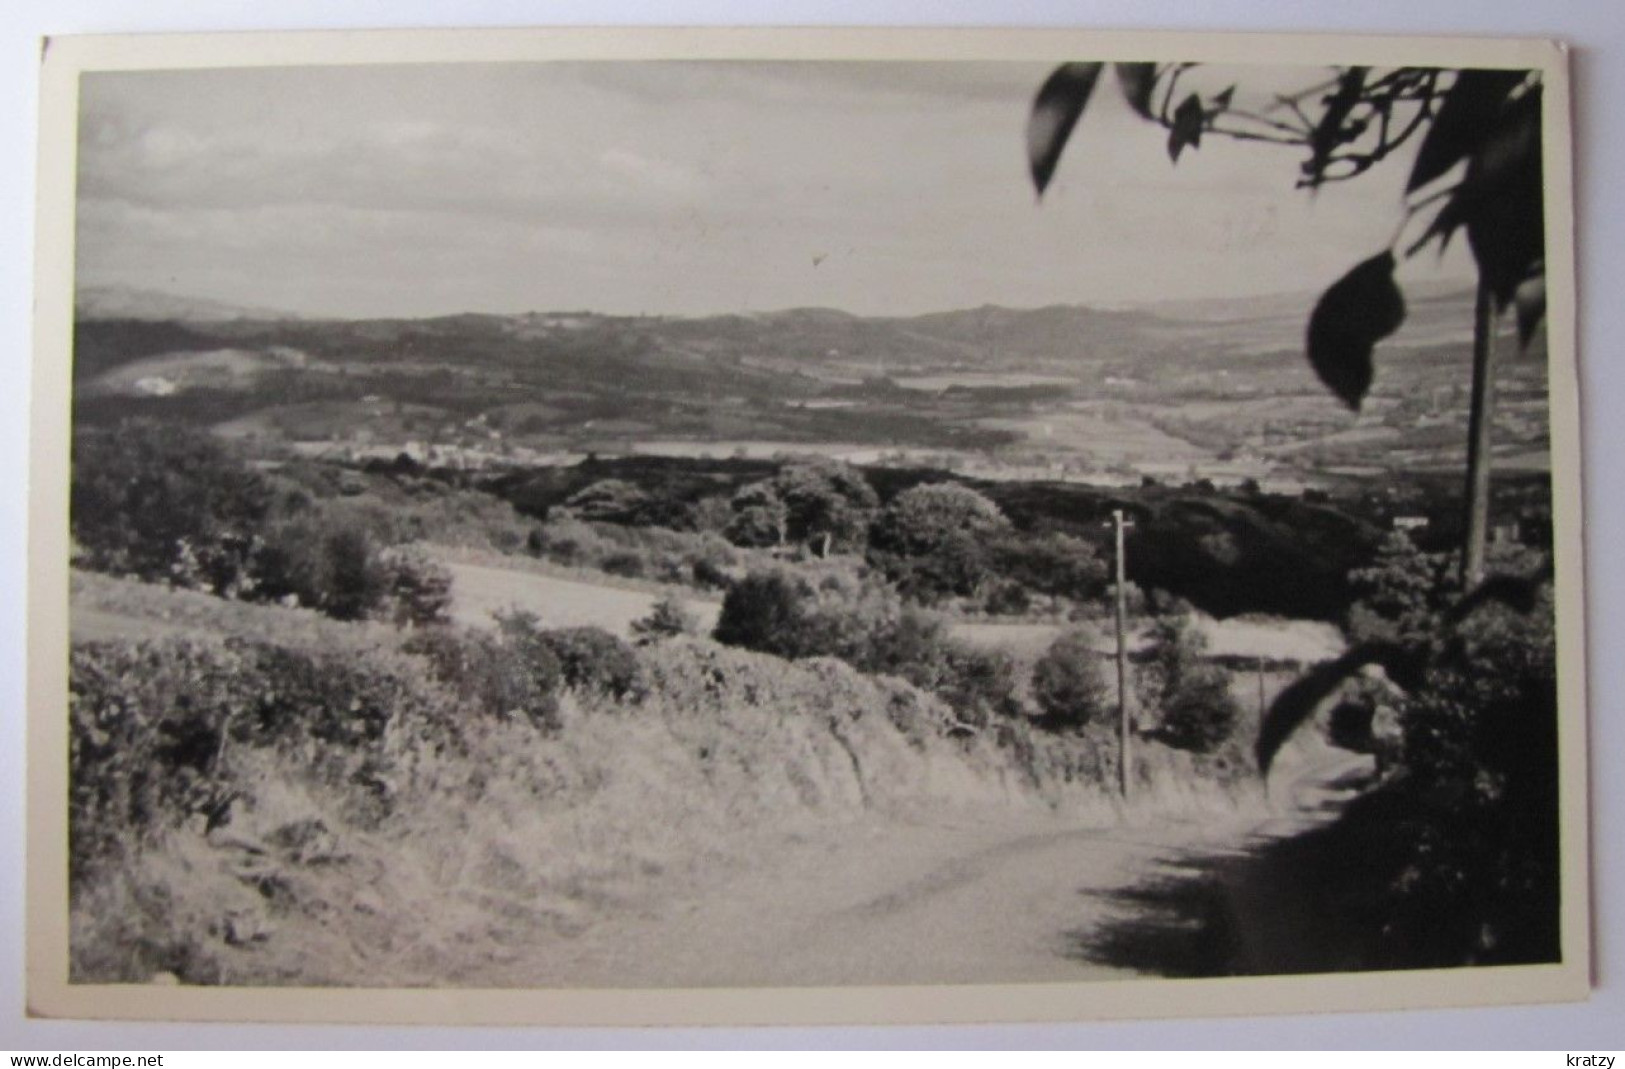 ROYAUME-UNI - PAYS DE GALLES - GWYNEDD - PENYGROES - Panorama - 1953 - Gwynedd